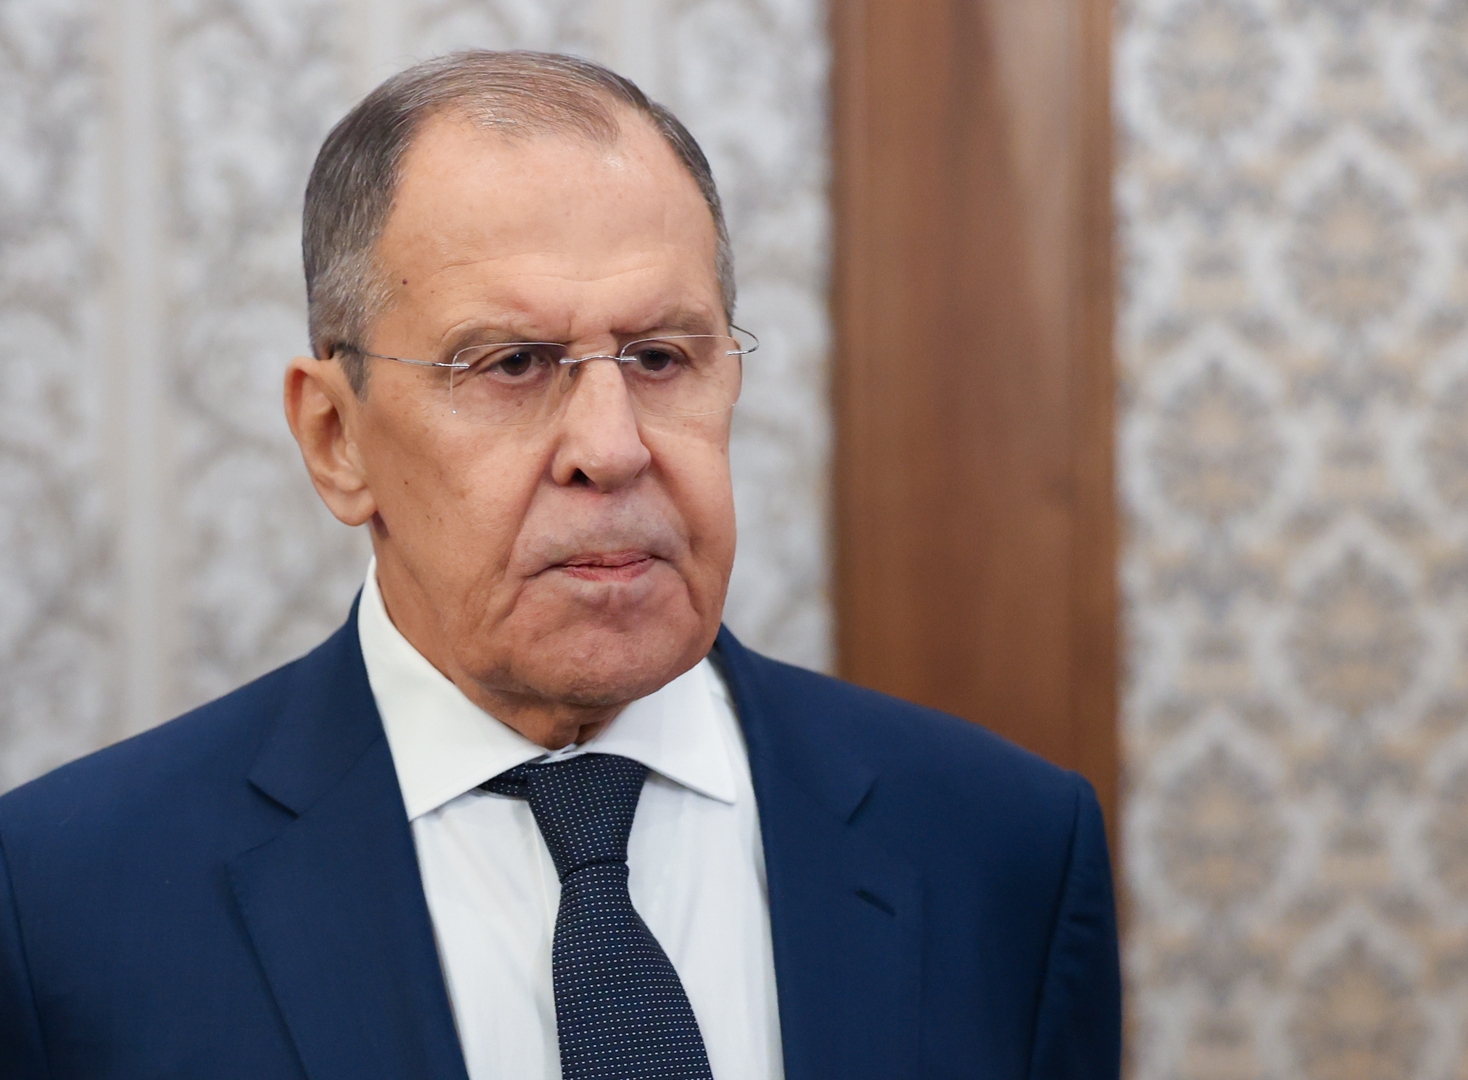 لافروف: روسيا والمغرب يتفقان على عقد اجتماع للجنة الحكومية المشتركة مطلع العام المقبل